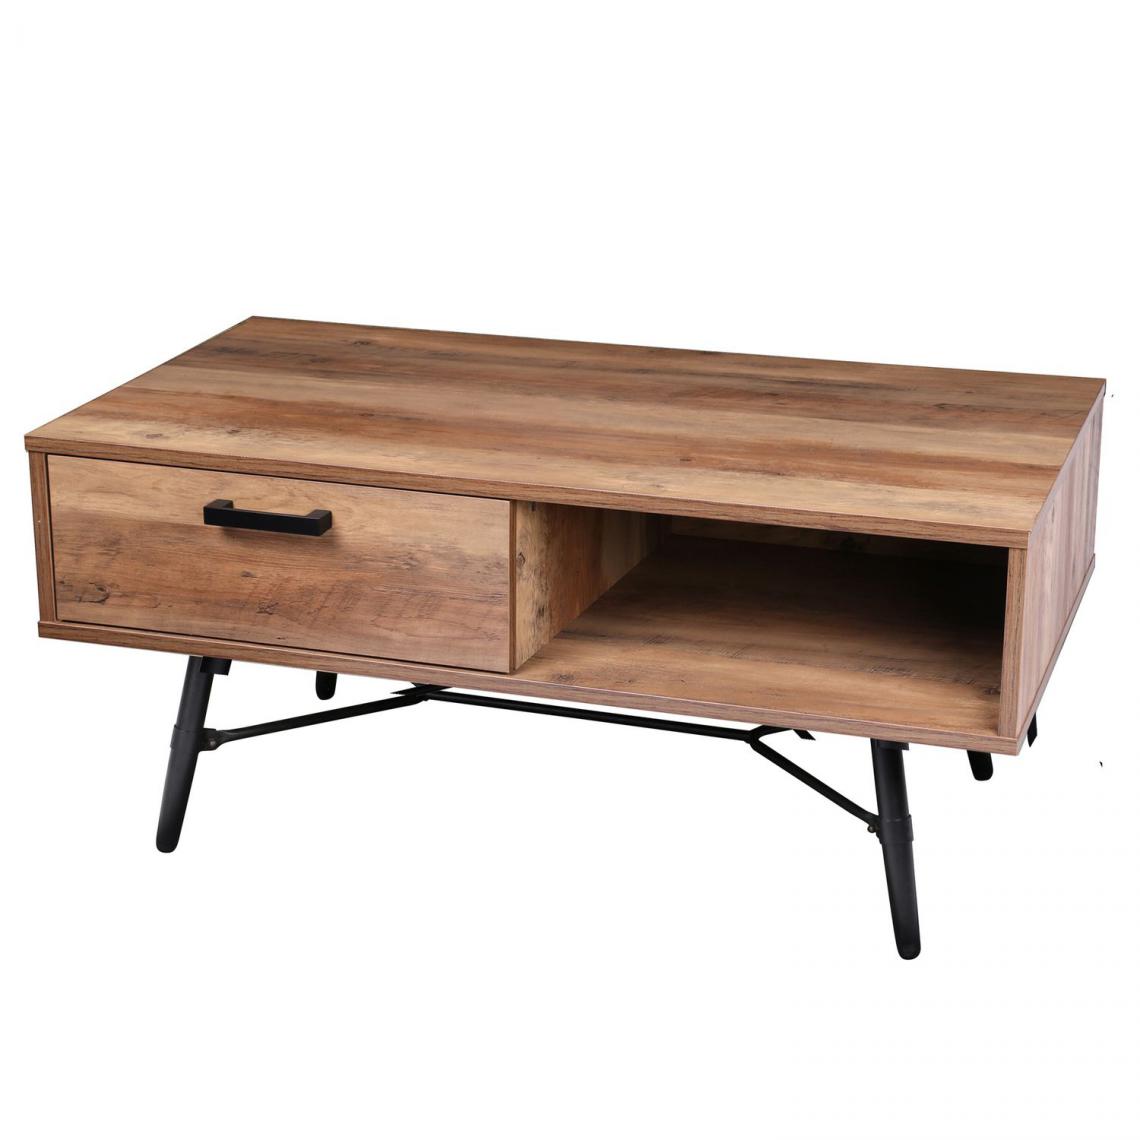 Urban Living - Table basse design bois et métal Hampton - L. 110 x H. 49 cm - Noir - Tables basses